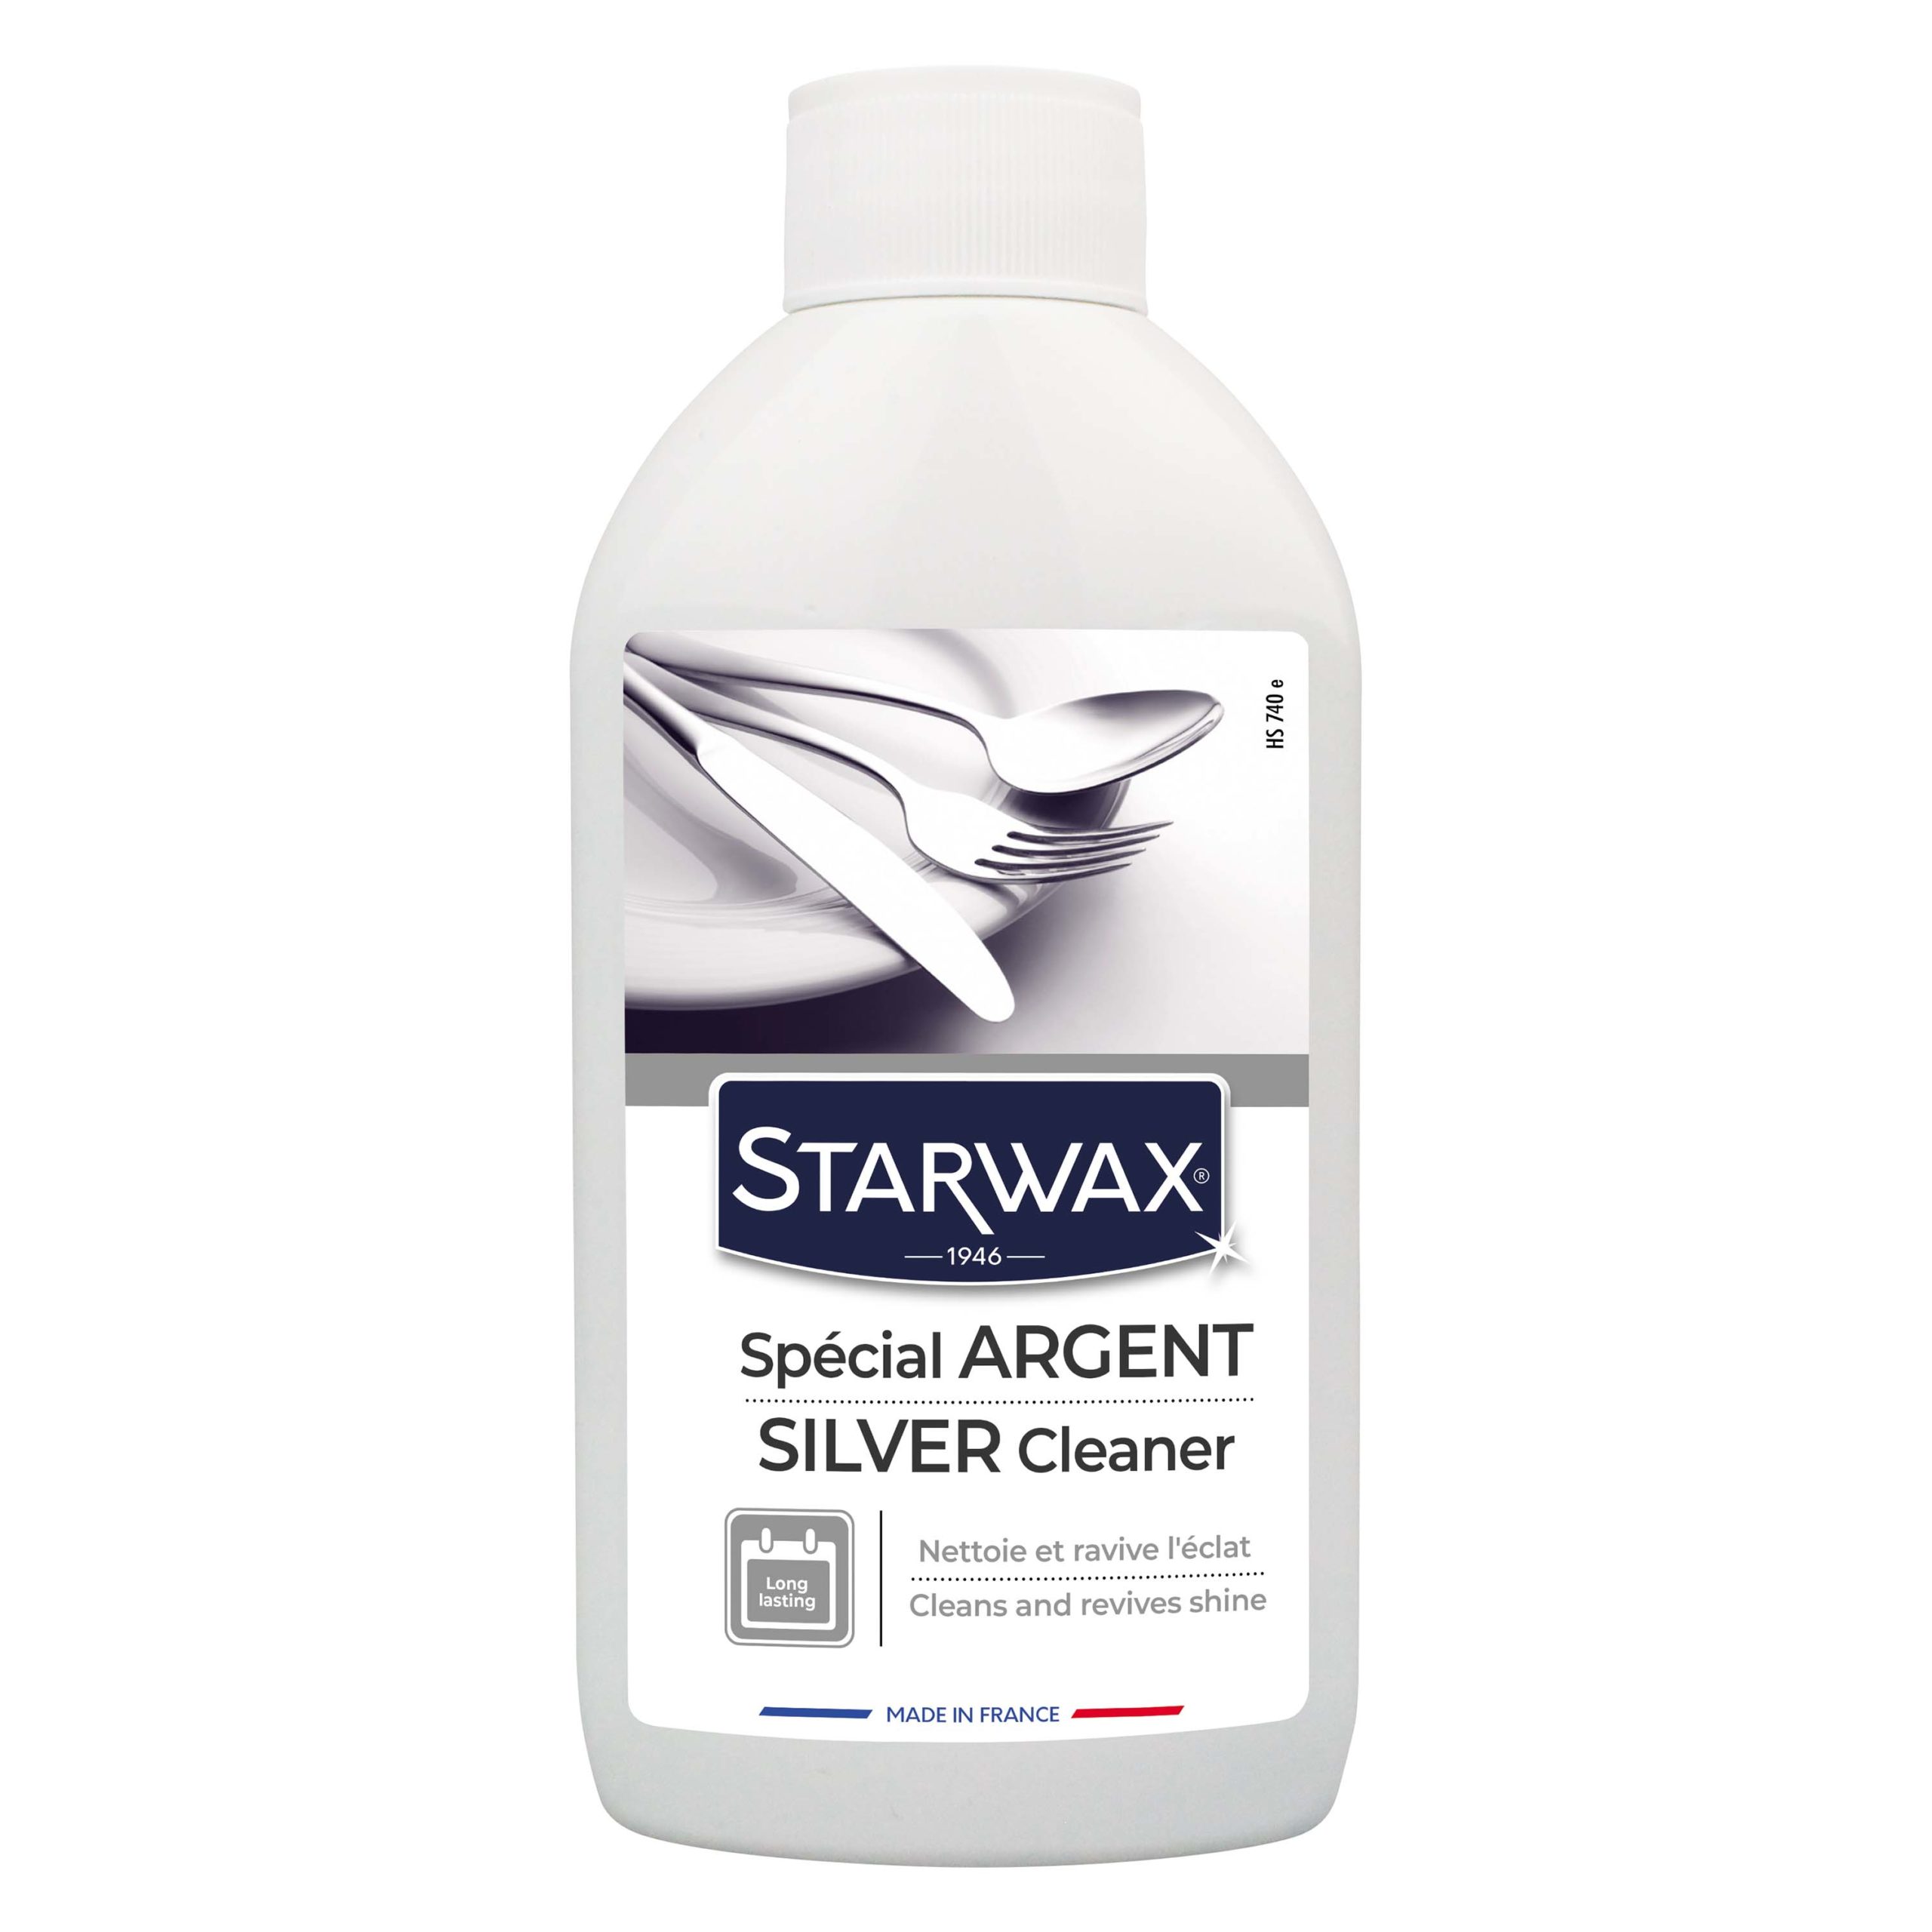 Starwax limpia Plata 250ml 